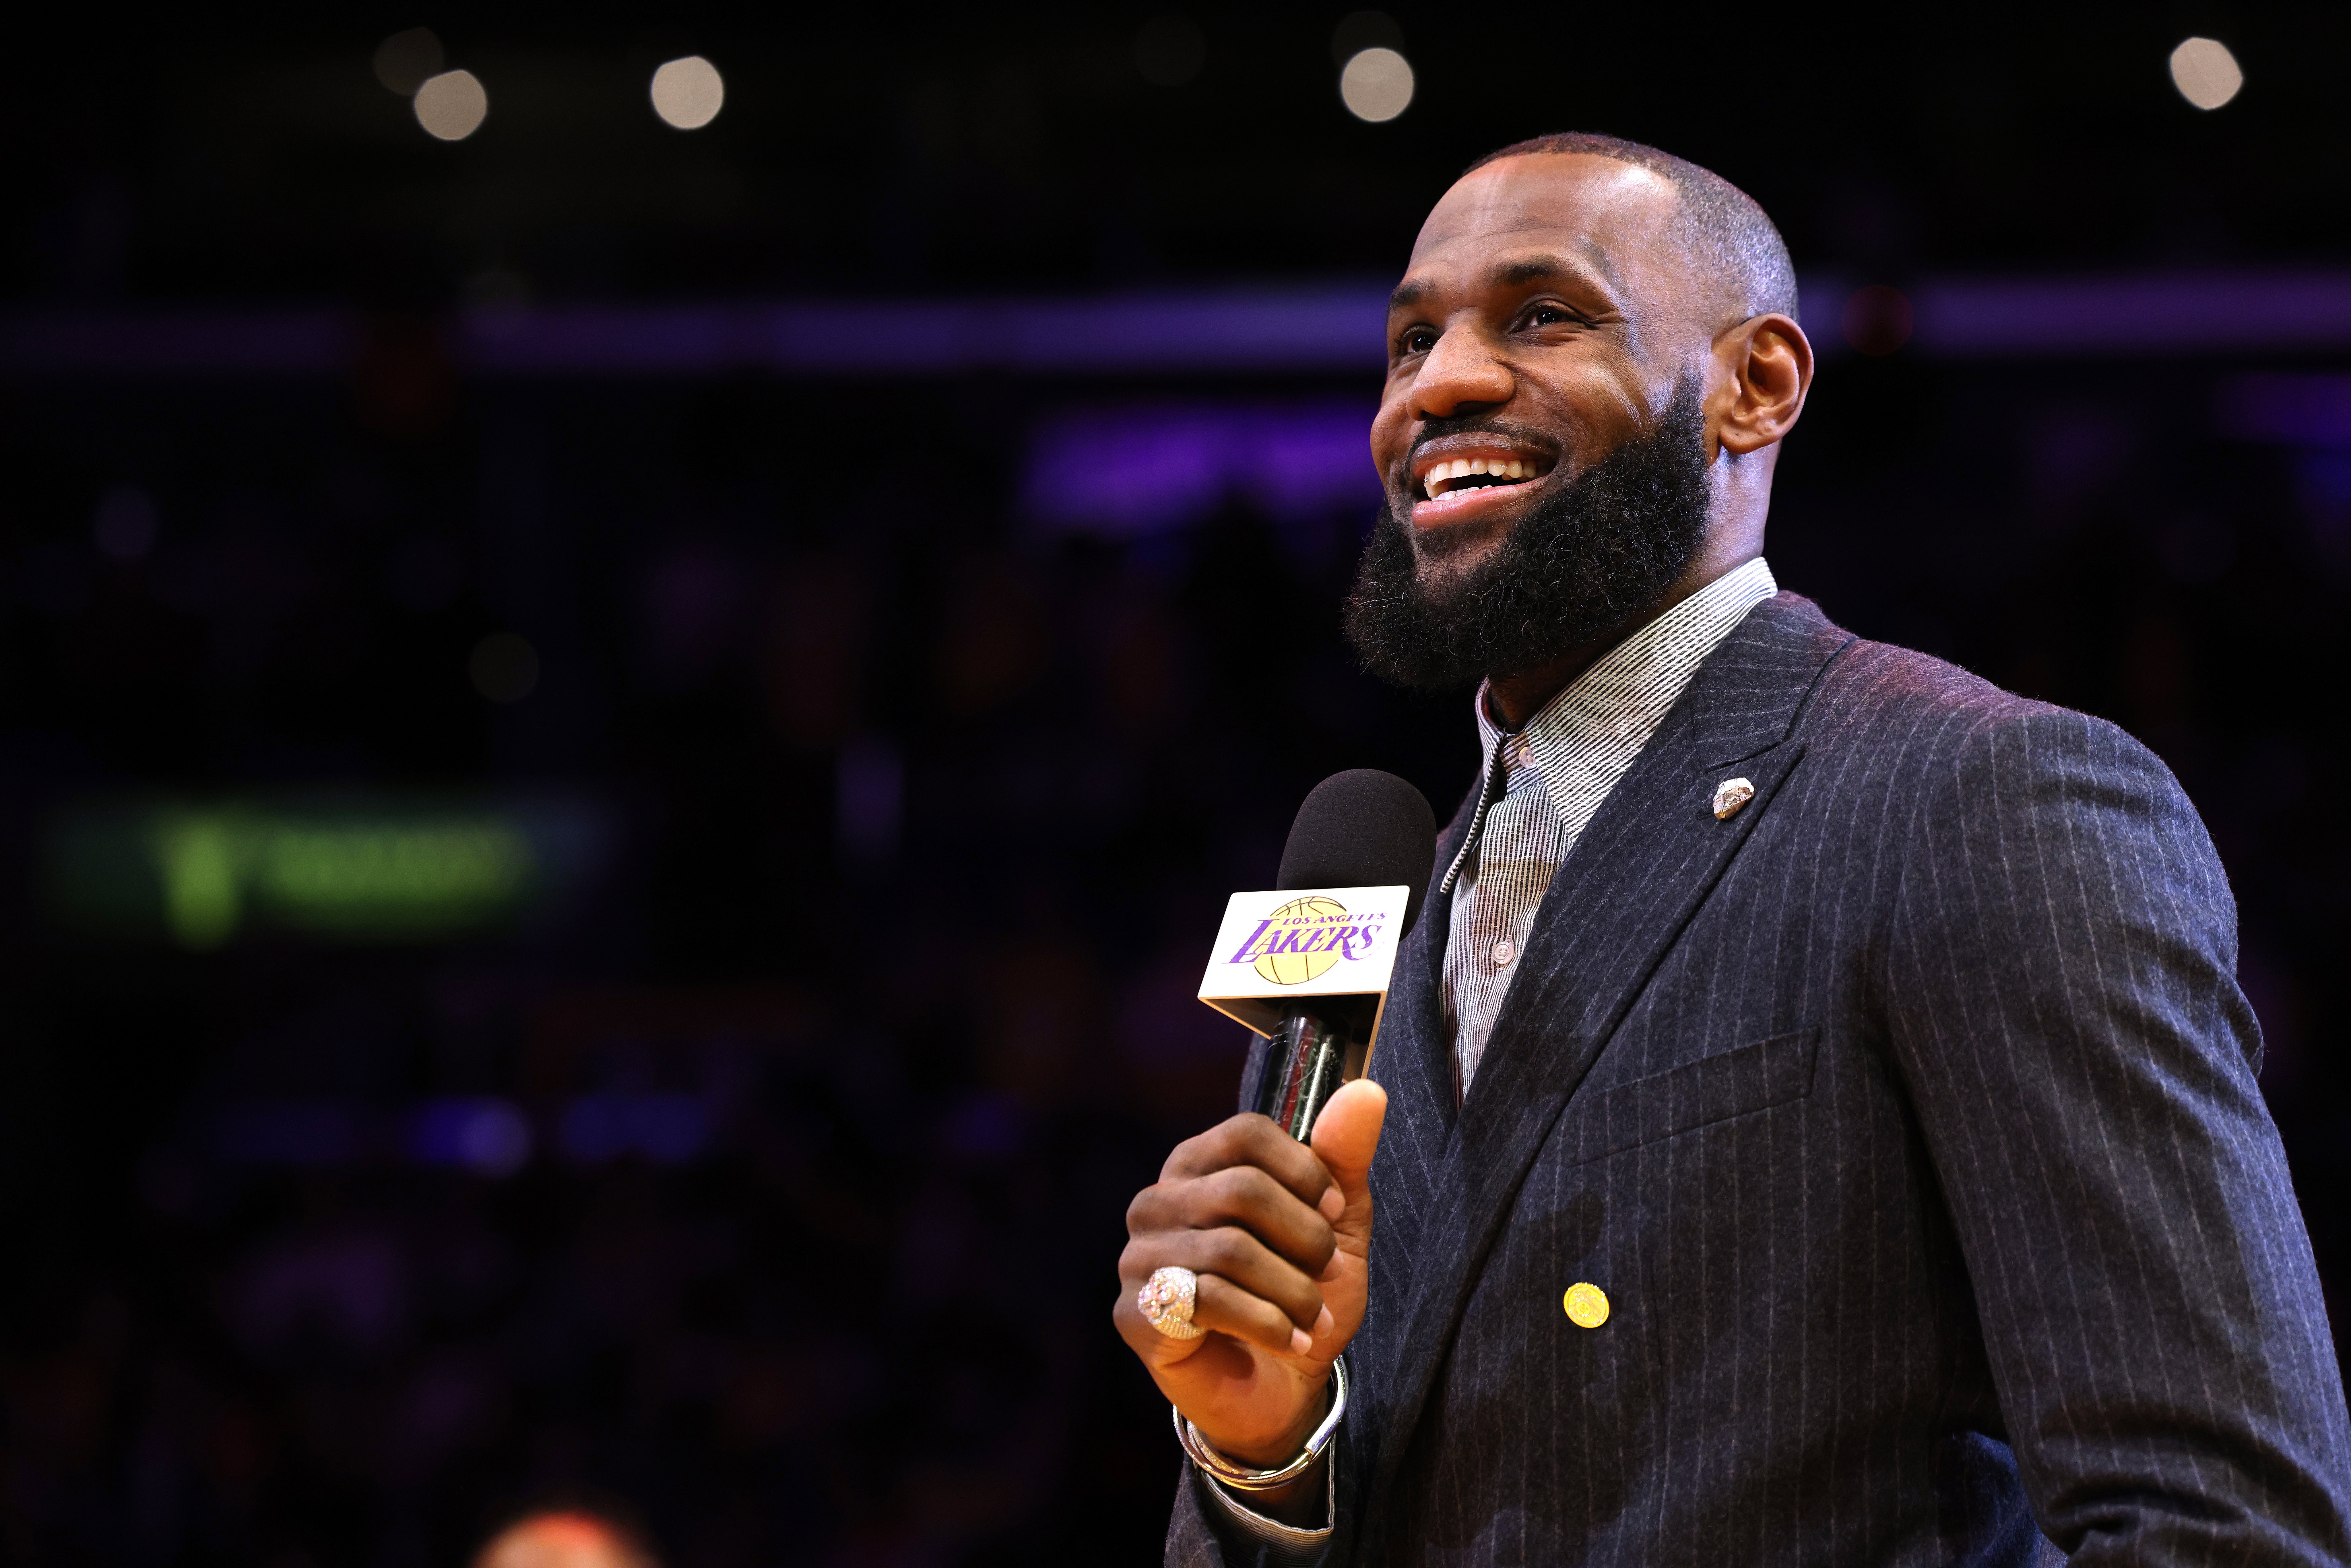 LeBron and Savannah James Shine at WNBA Games Amid NBA Ownership Talks